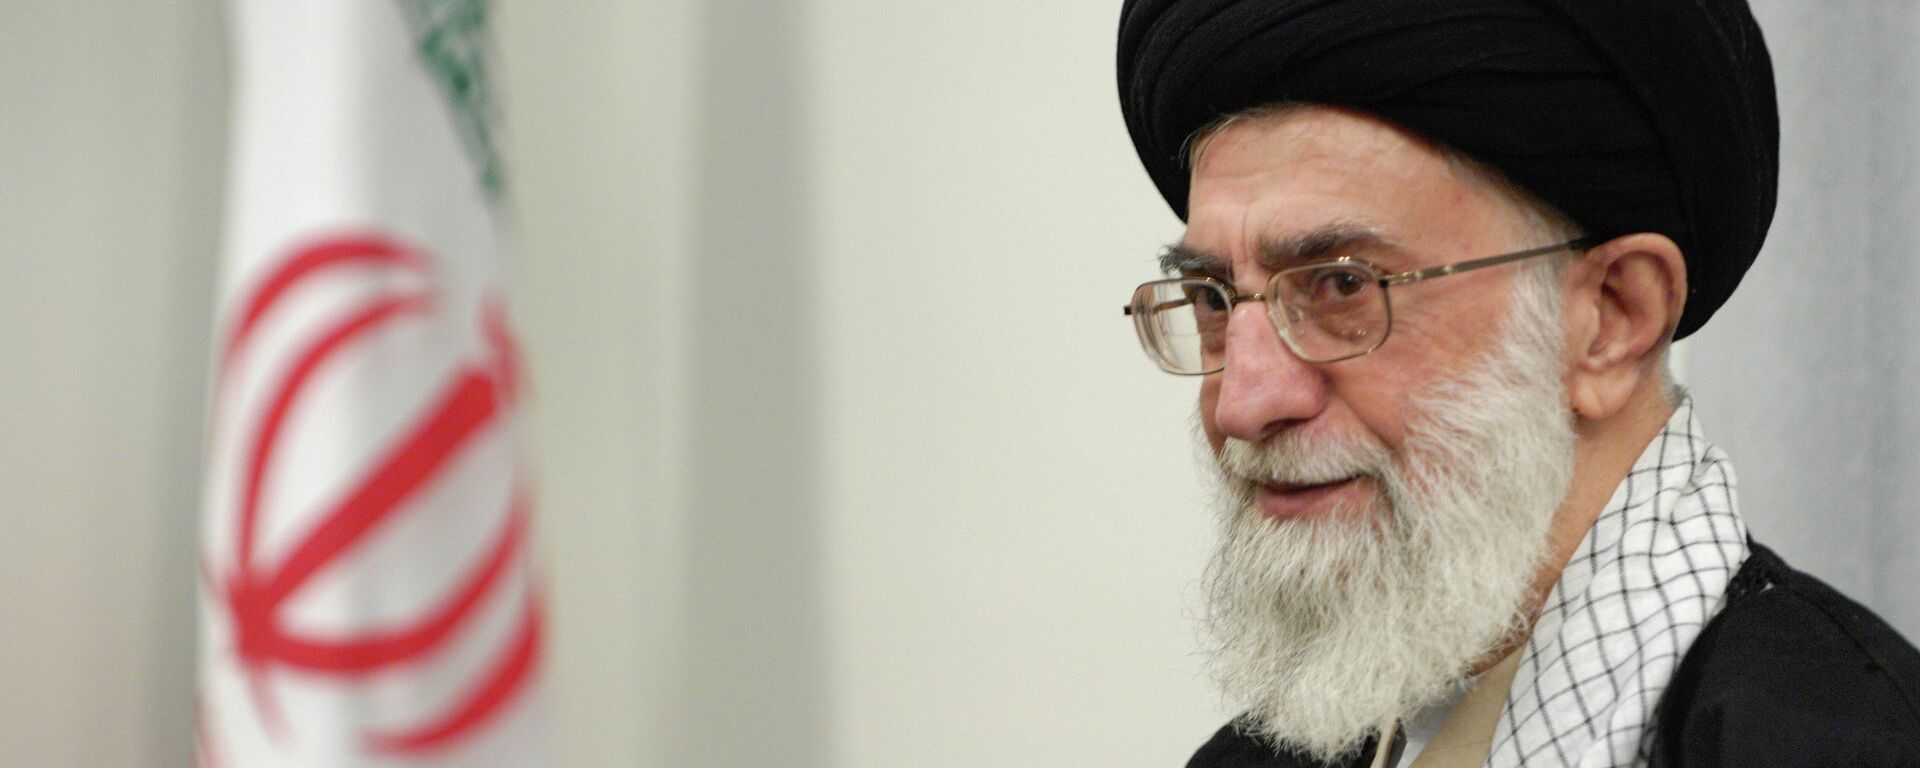 Духовный лидер Ирана аятолла Сейед Али Хаменеи. Архивное фото. - Sputnik Тоҷикистон, 1920, 13.07.2022